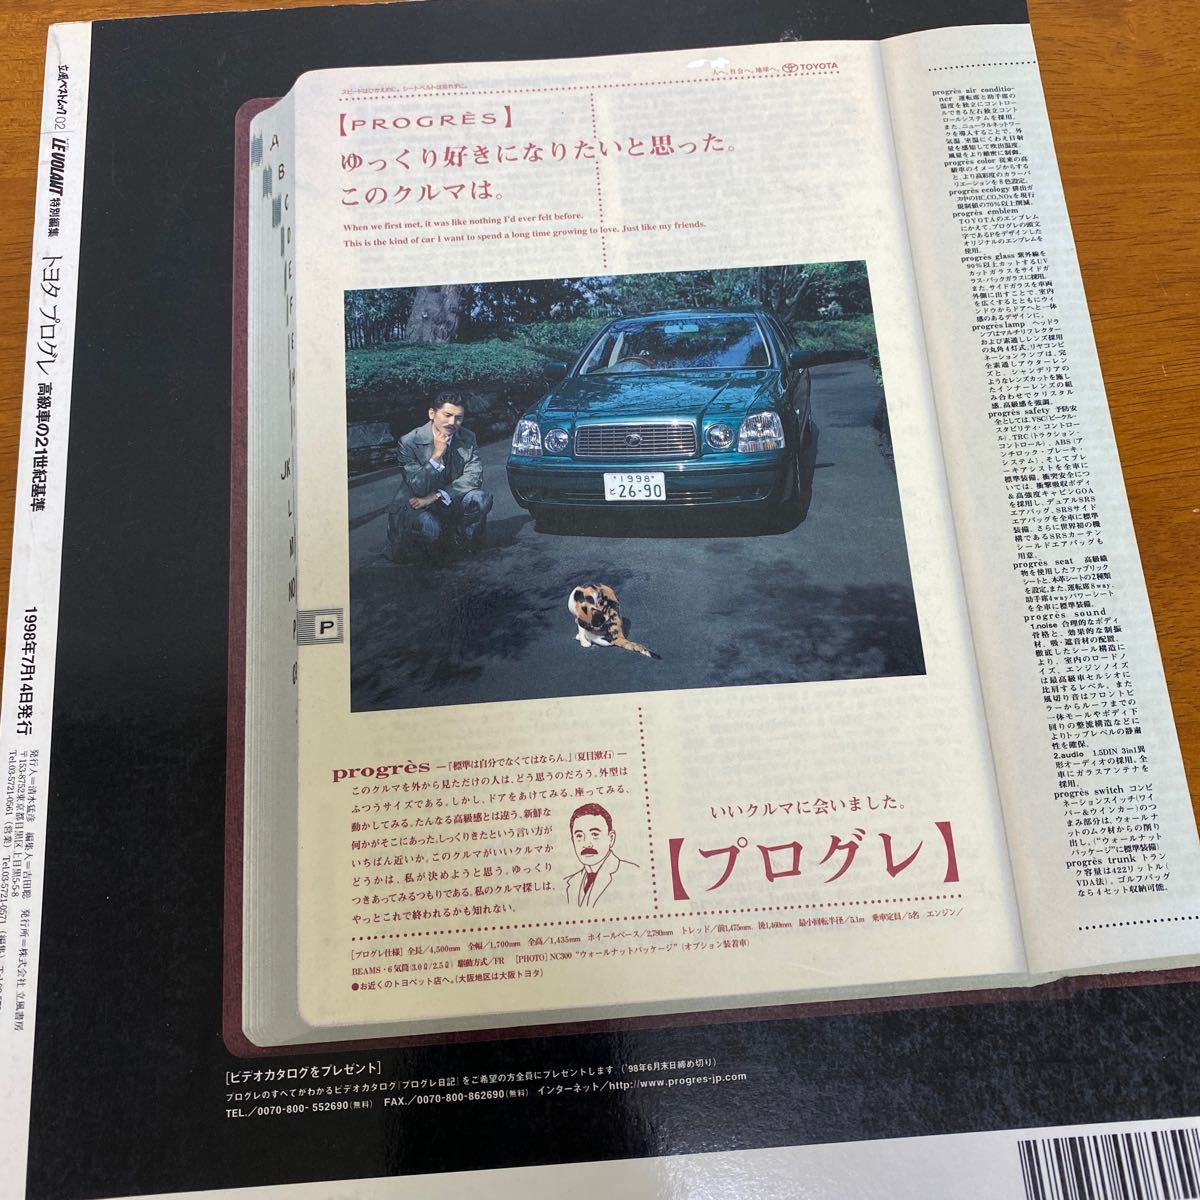 トヨタプログレ 高級車の21世紀基準(立風ベストムック ルボラン LE VOLANT 特別編集) 1998年7月14日発行 ※すべてシリーズに似た本です_画像10